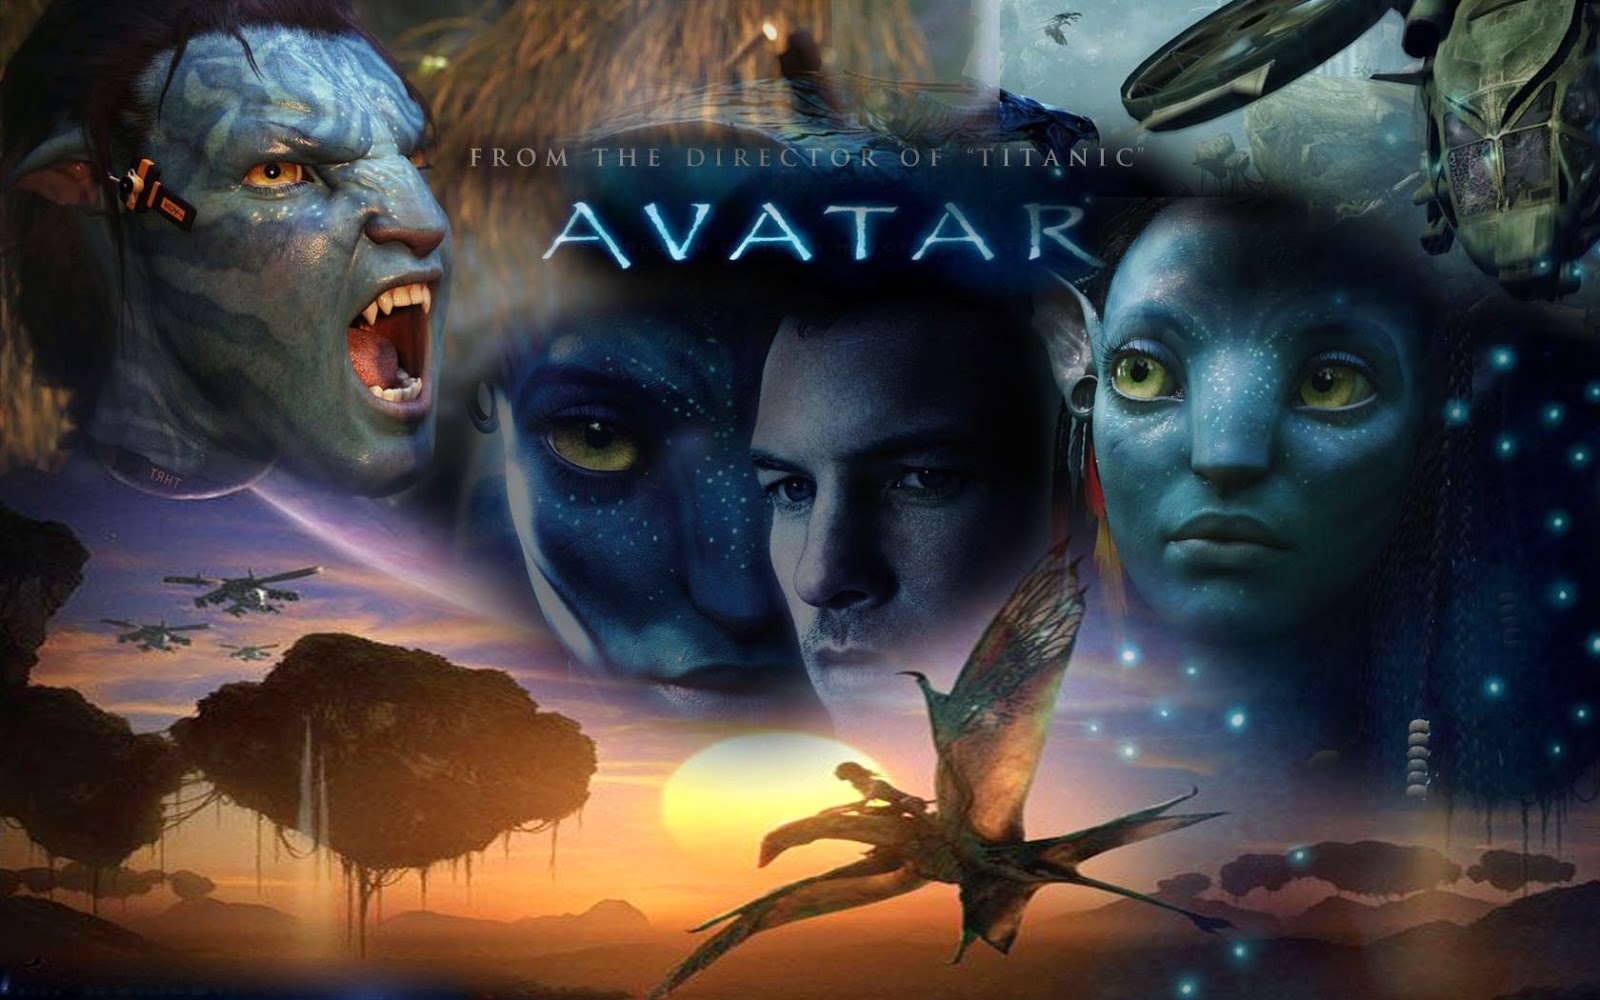 Ngỡ ngàng trước vẻ đẹp của bom tấn Avatar tựa game chuyển thể từ phim sắp  được ra mắt bởi Ubisoft